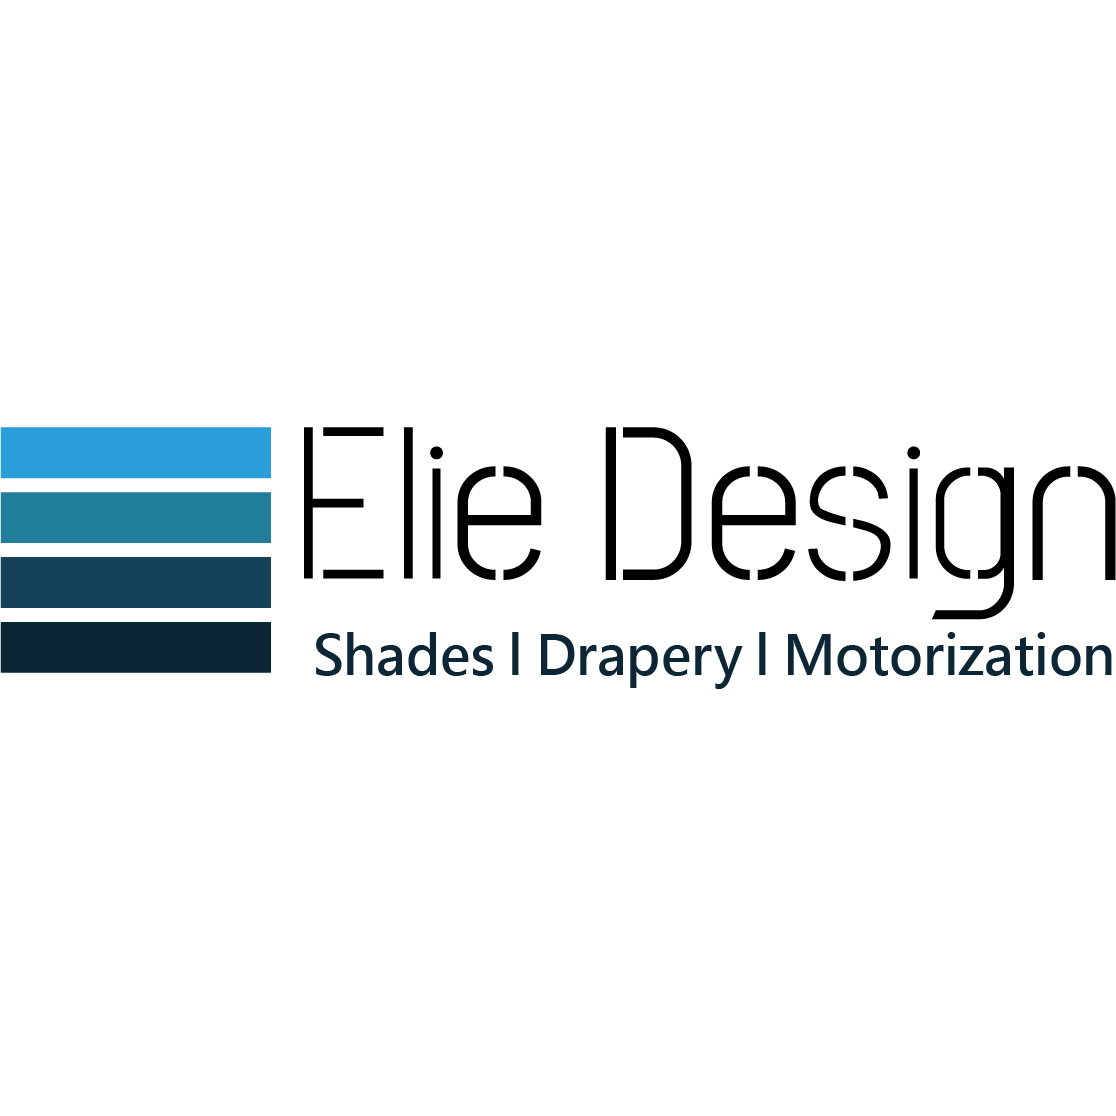 Elie Design - Hollywood, FL - (954)854-1448 | ShowMeLocal.com